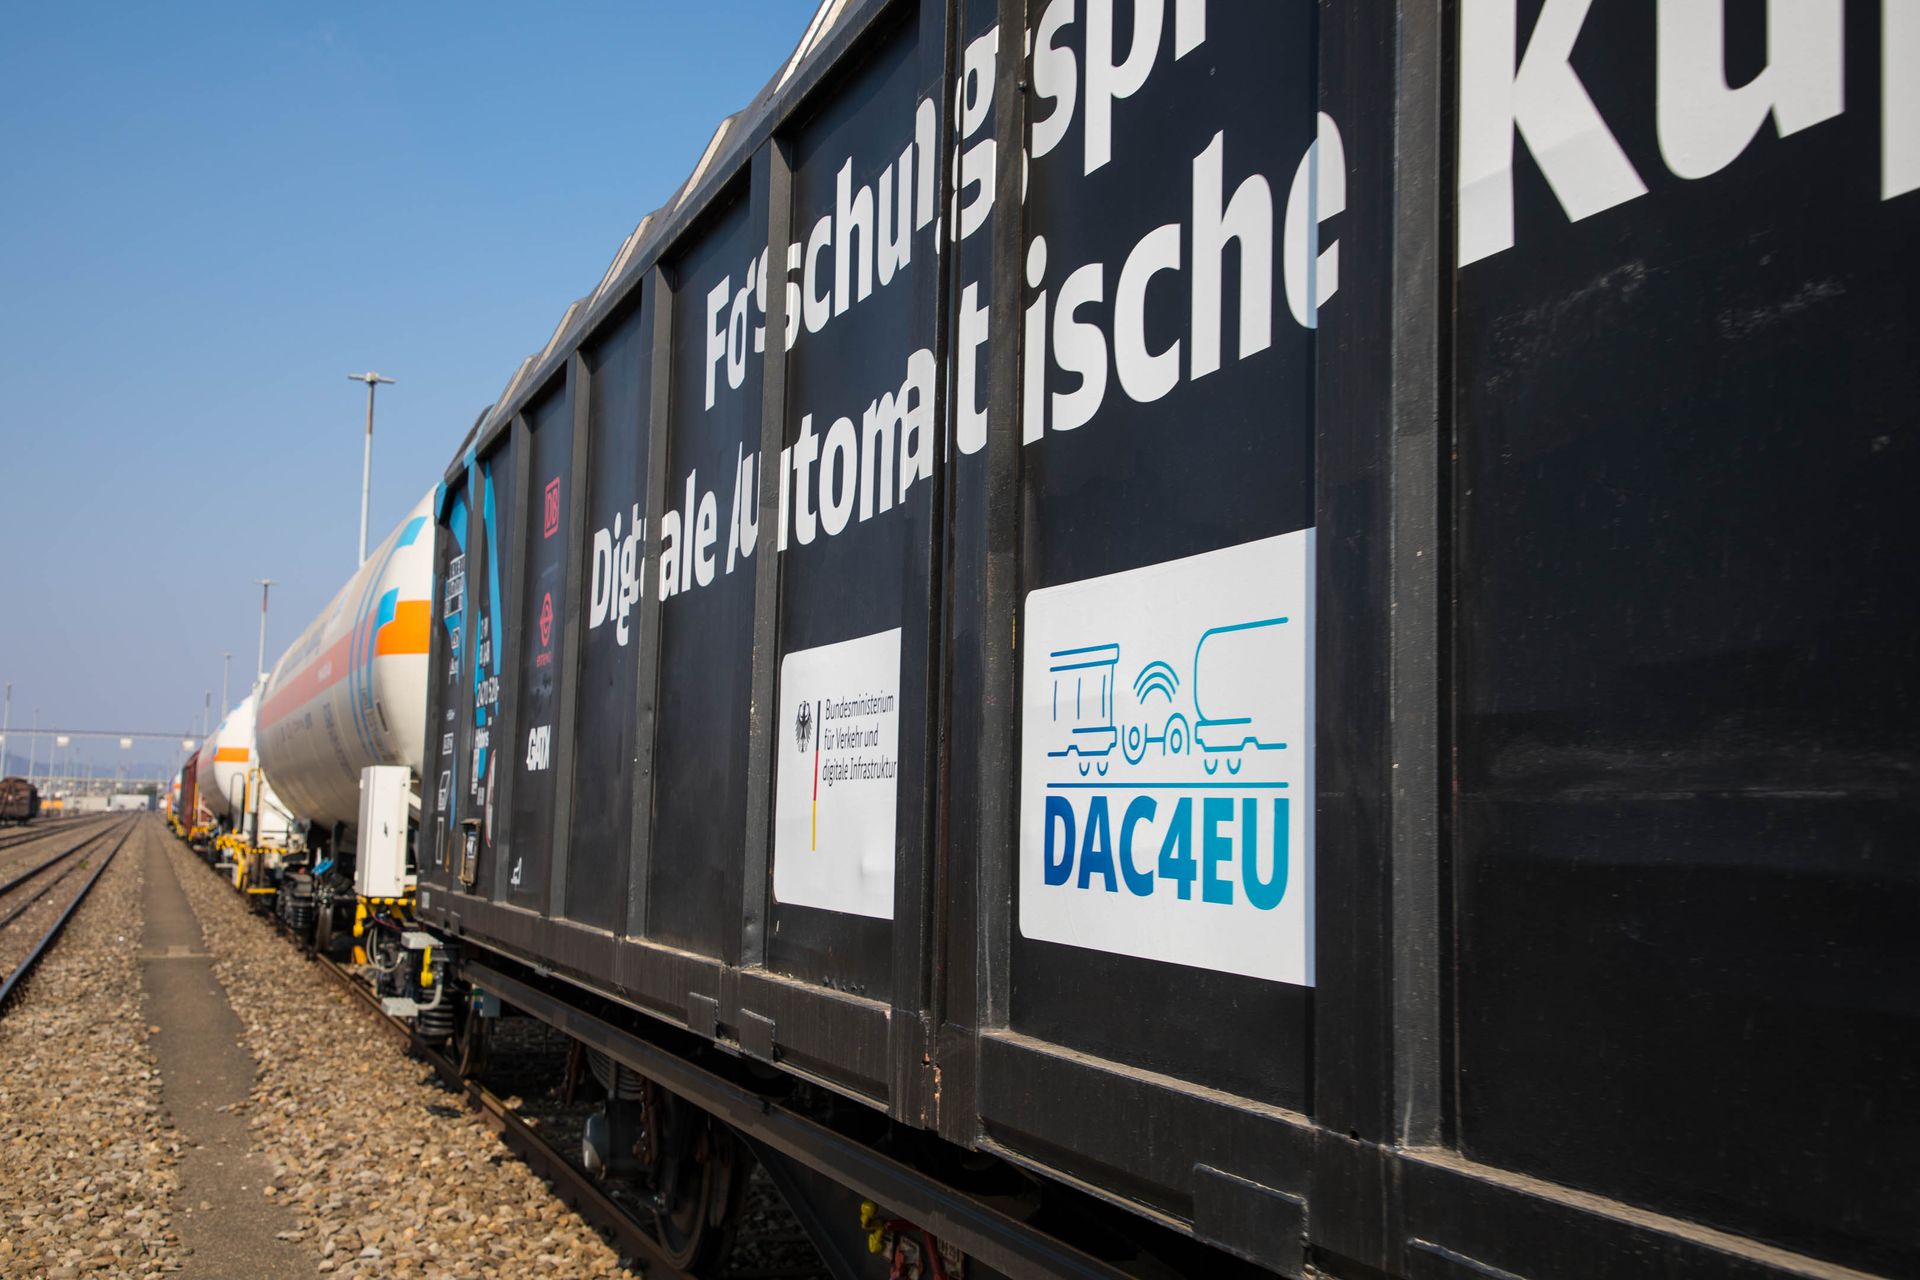 El tren digital de mercaderies està format per 13 vagons de mercaderies i vagons cisterna i el vehicle de DB Systemtechnik, utilitzat per a les tirades de mesura: els vagons es connecten entre ells mitjançant un acoblament automàtic digital, l'acrònim del qual és DAK, que a més de la connexió mecànica i pneumàtica té una línia contínua de dades i elèctrica que fa possible la transmissió de dades a tot el tren.